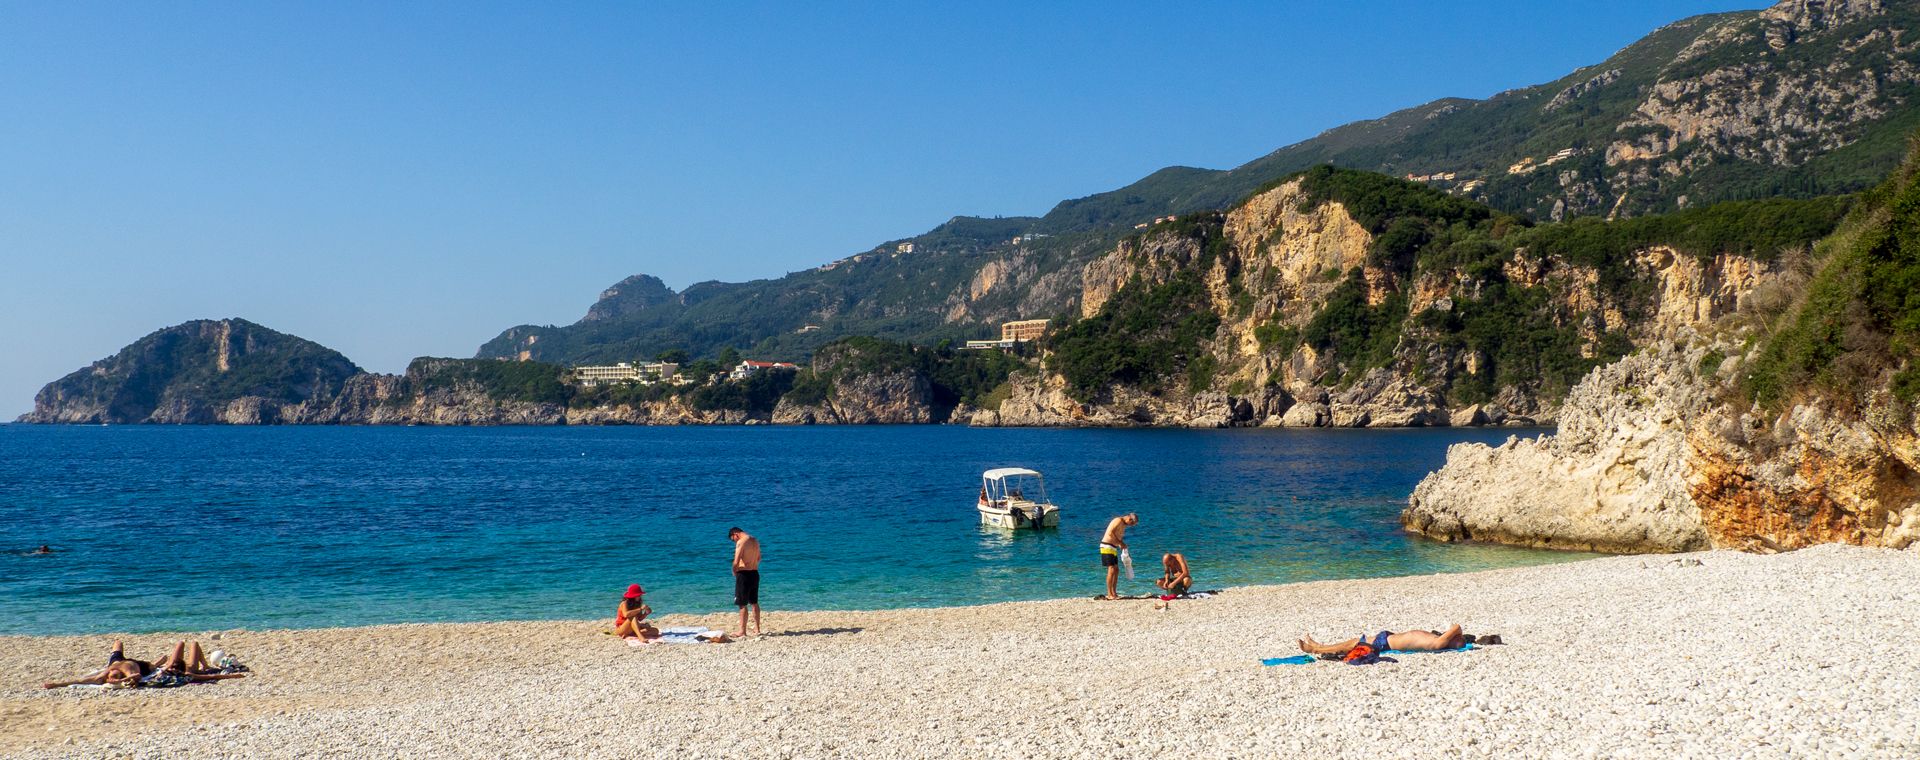 Rovinia beach near Liapades, Corfu